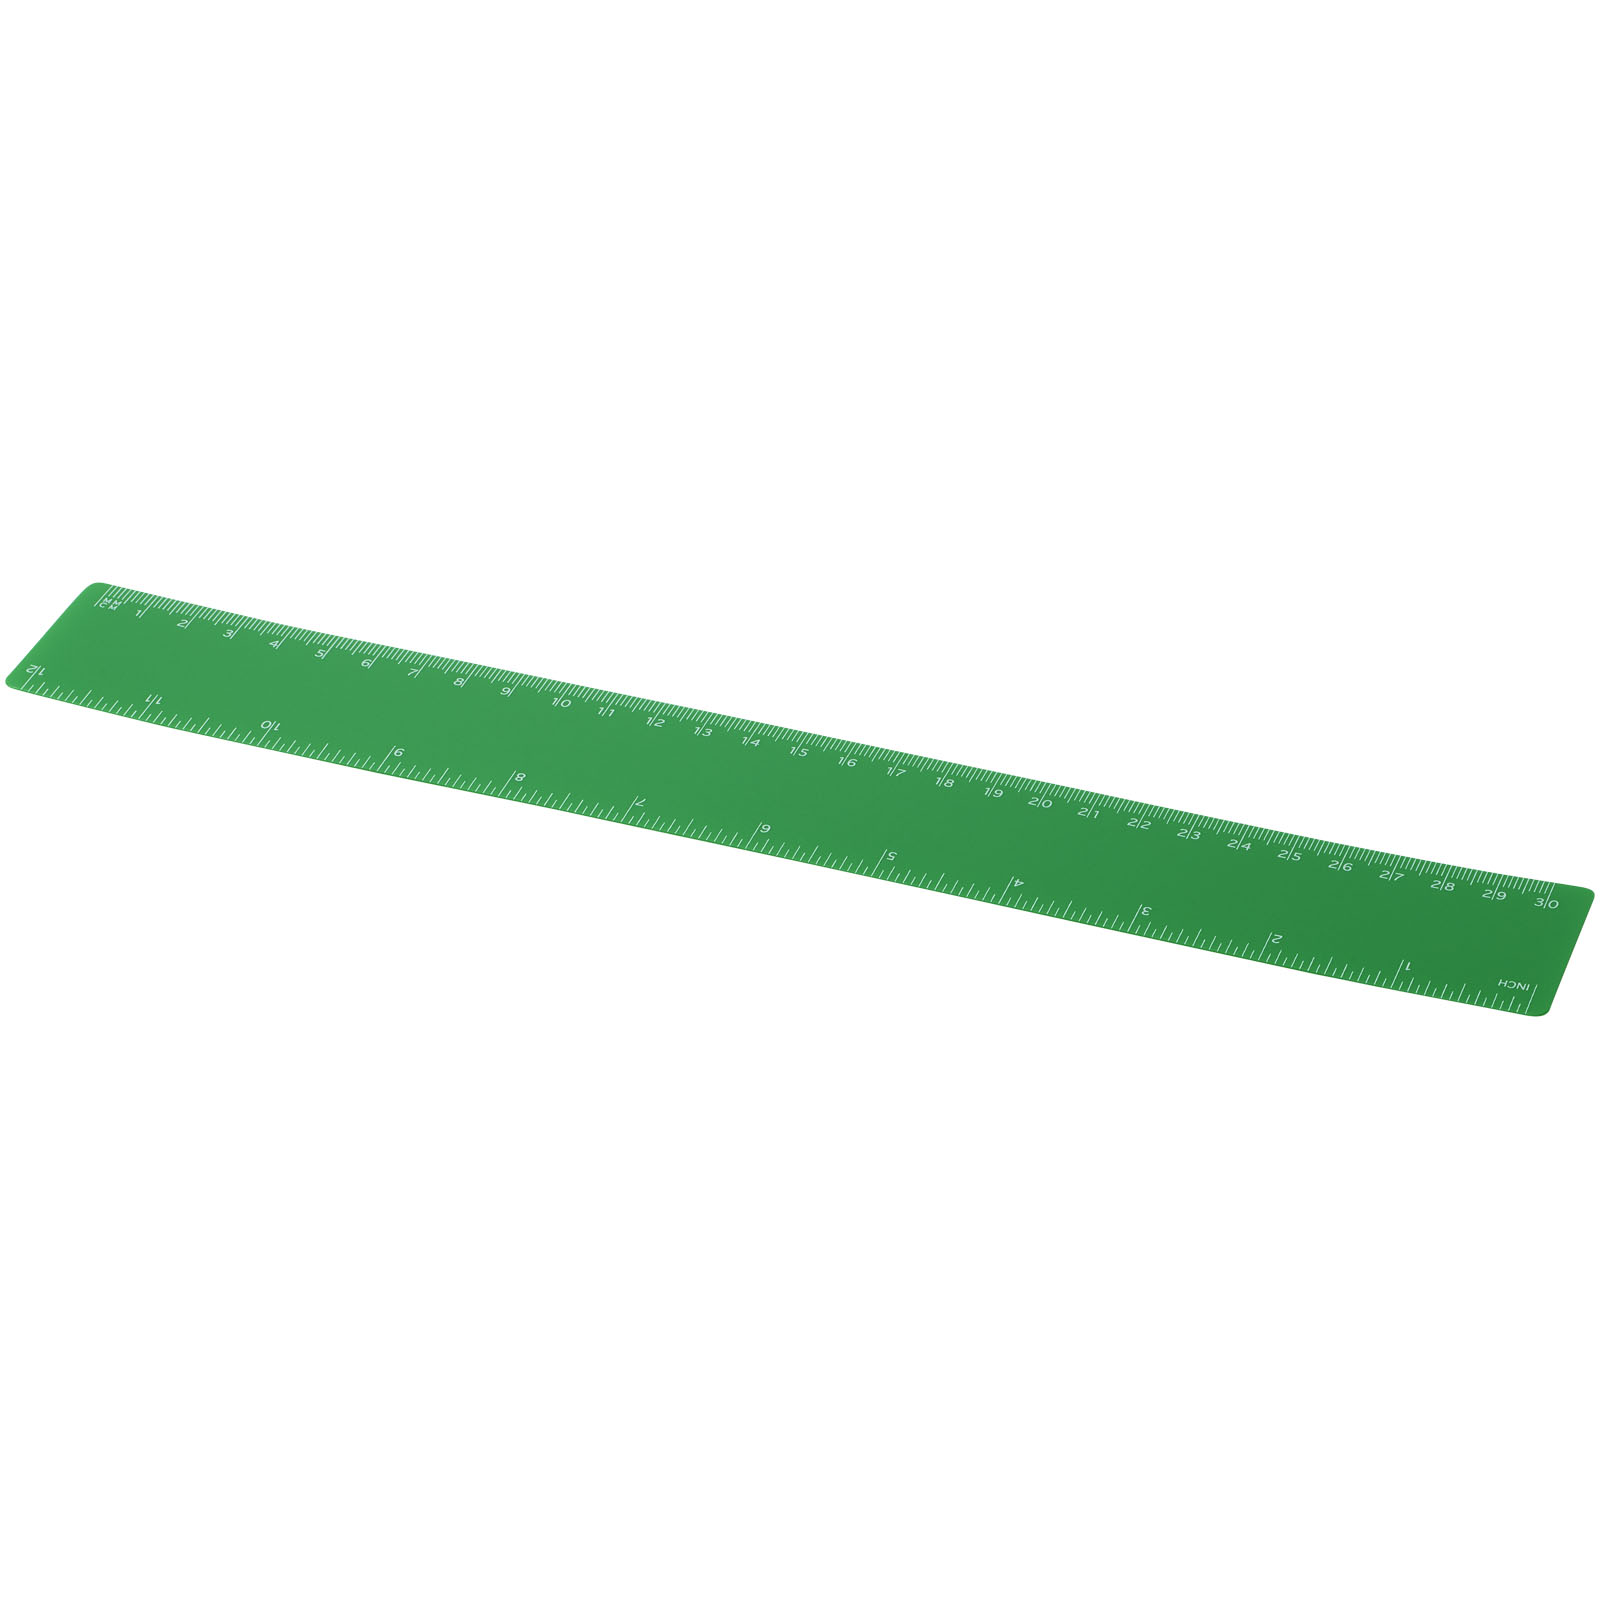 Advertising Desk Accessories - Rothko 30 cm plastic ruler